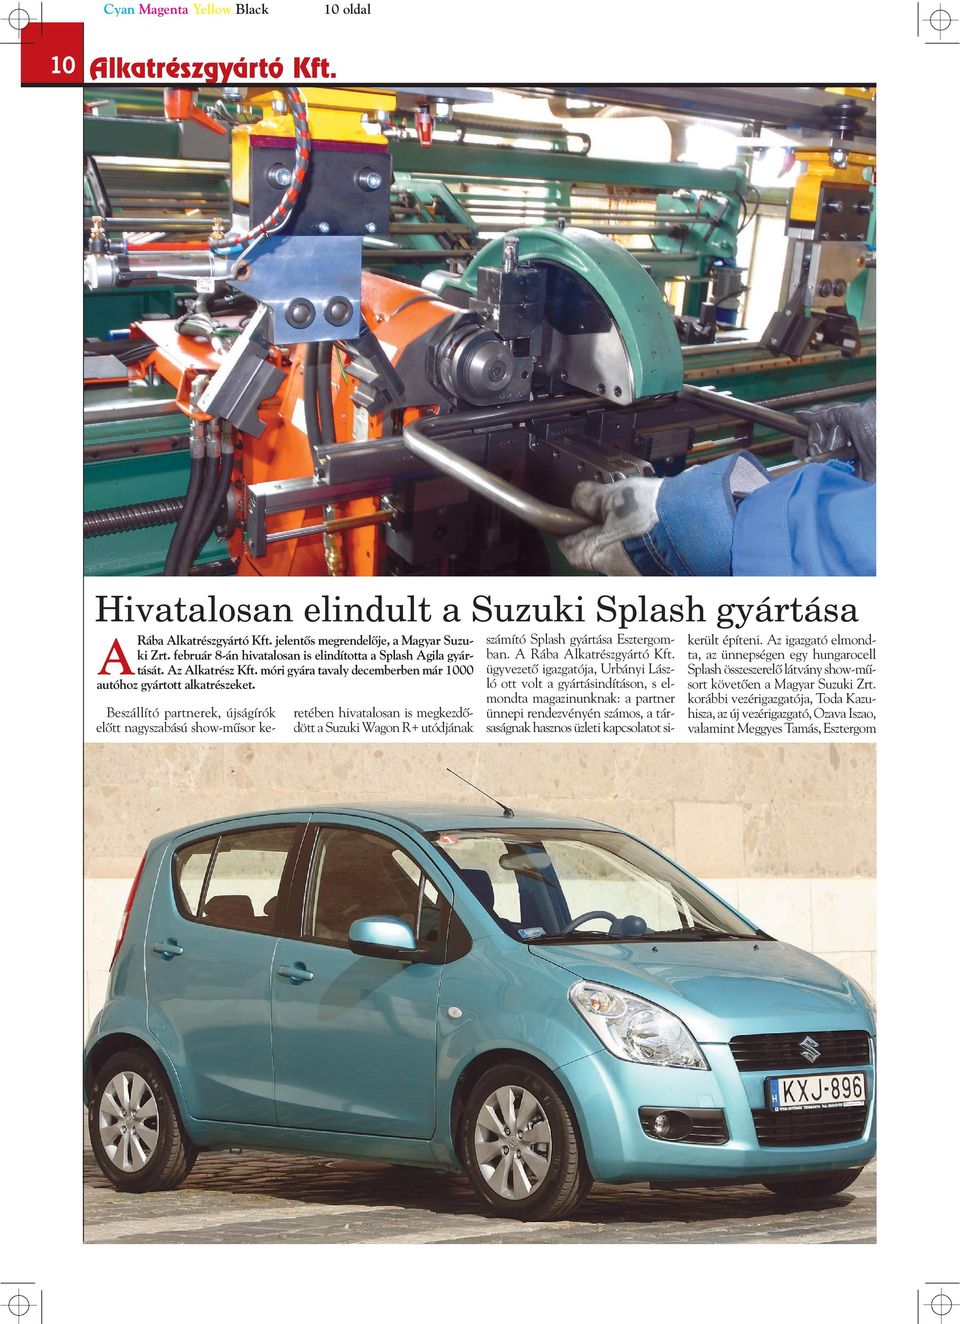 Beszállító partnerek, újságírók elôtt nagyszabású show-mûsor keretében hivatalosan is megkezdôdött a Suzuki Wagon R+ utódjának számító Splash gyártása Esztergomban. A Rába Alkatrészgyártó Kft.